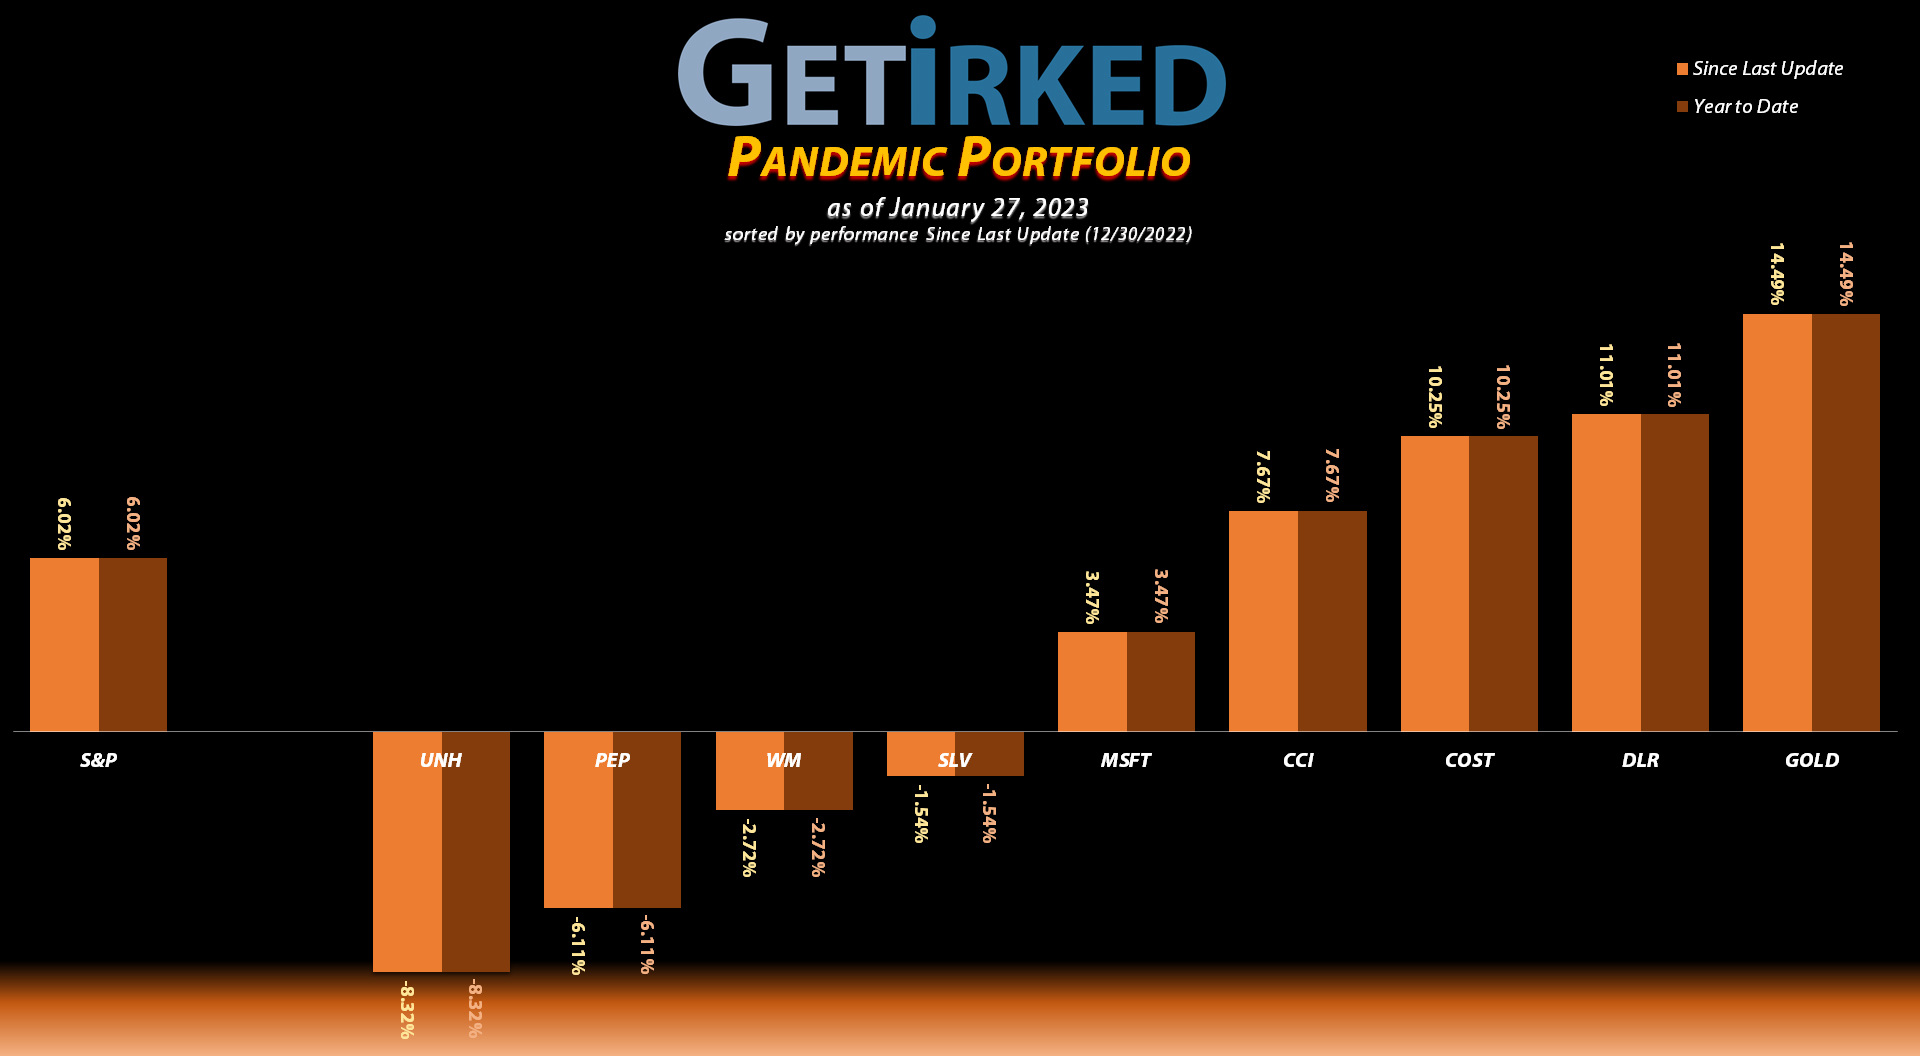 Get Irked - Pandemic Portfolio - January 27, 2023